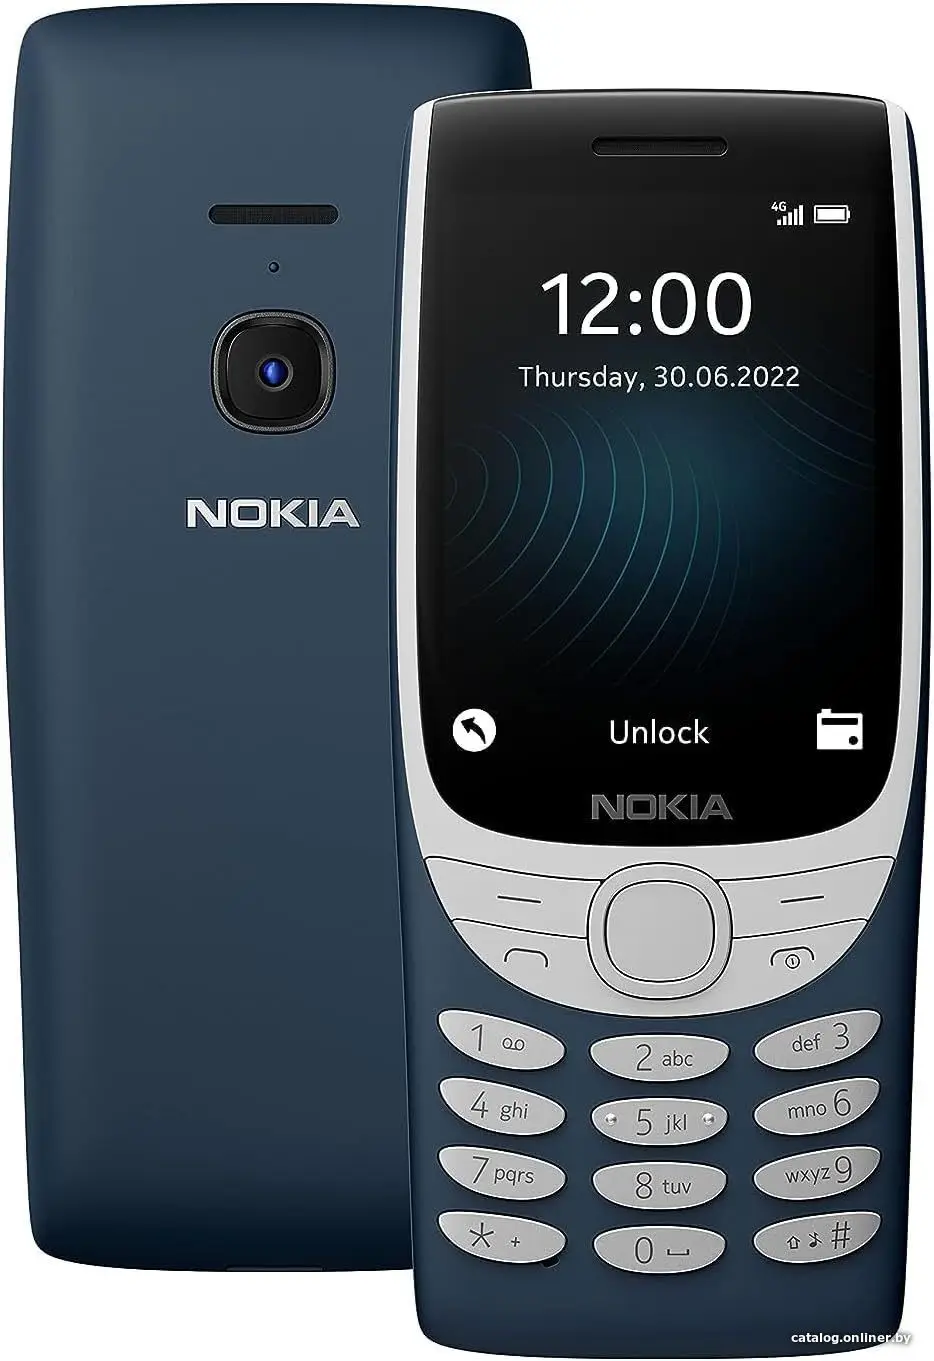 Купить Кнопочный телефон Nokia 8210 4G Dual SIM ТА-1489 (синий), цена, опт и розница